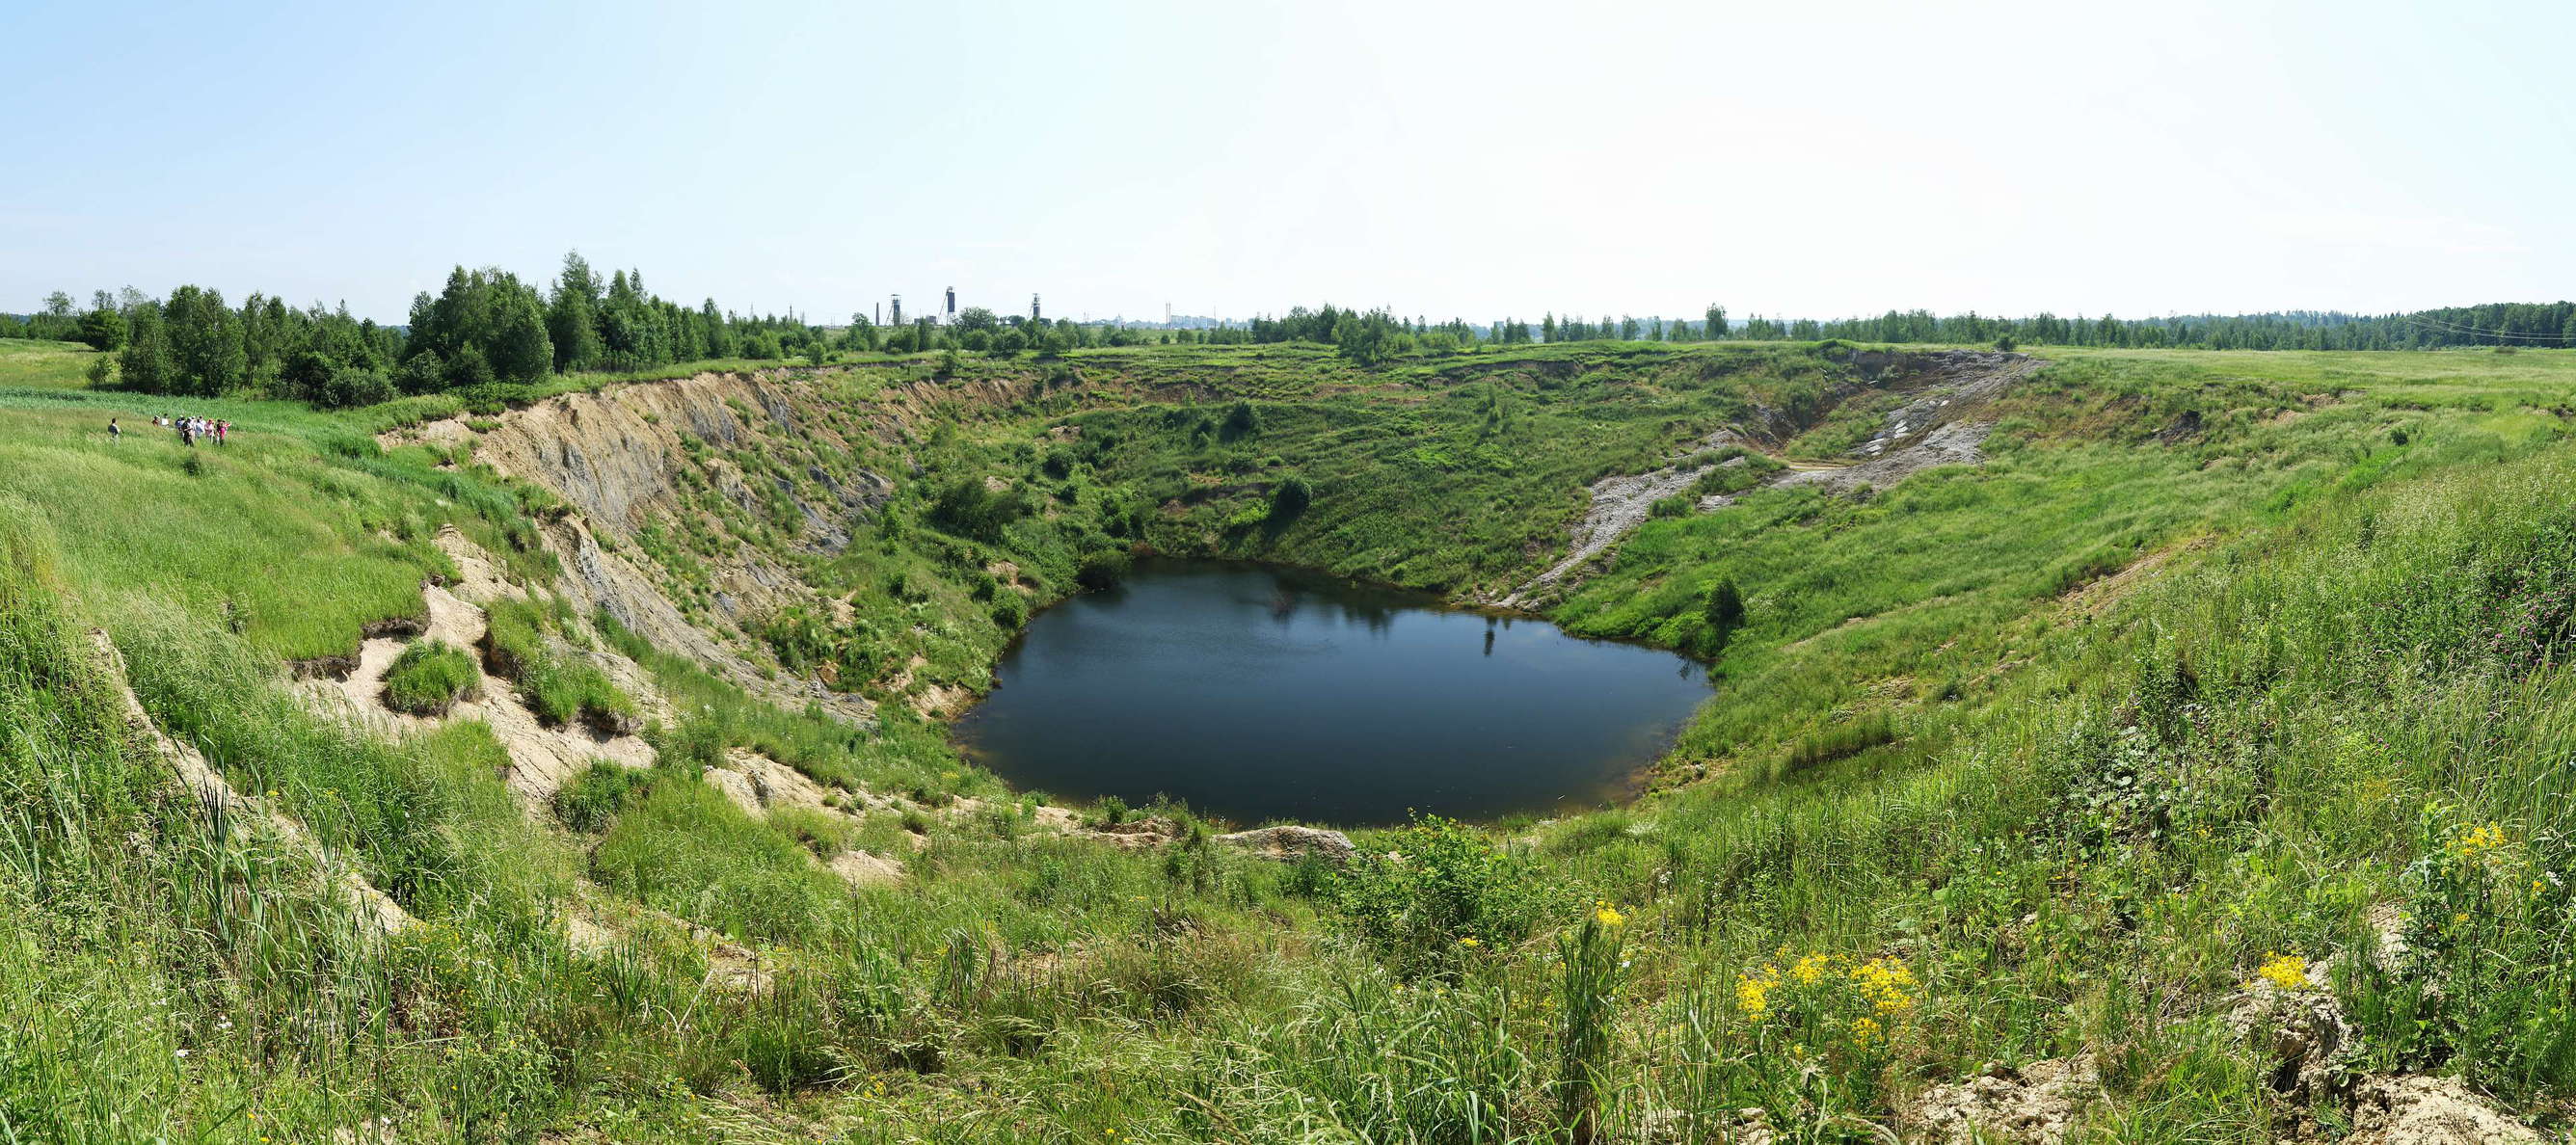 Stebnyk | Panorama of sinkhole